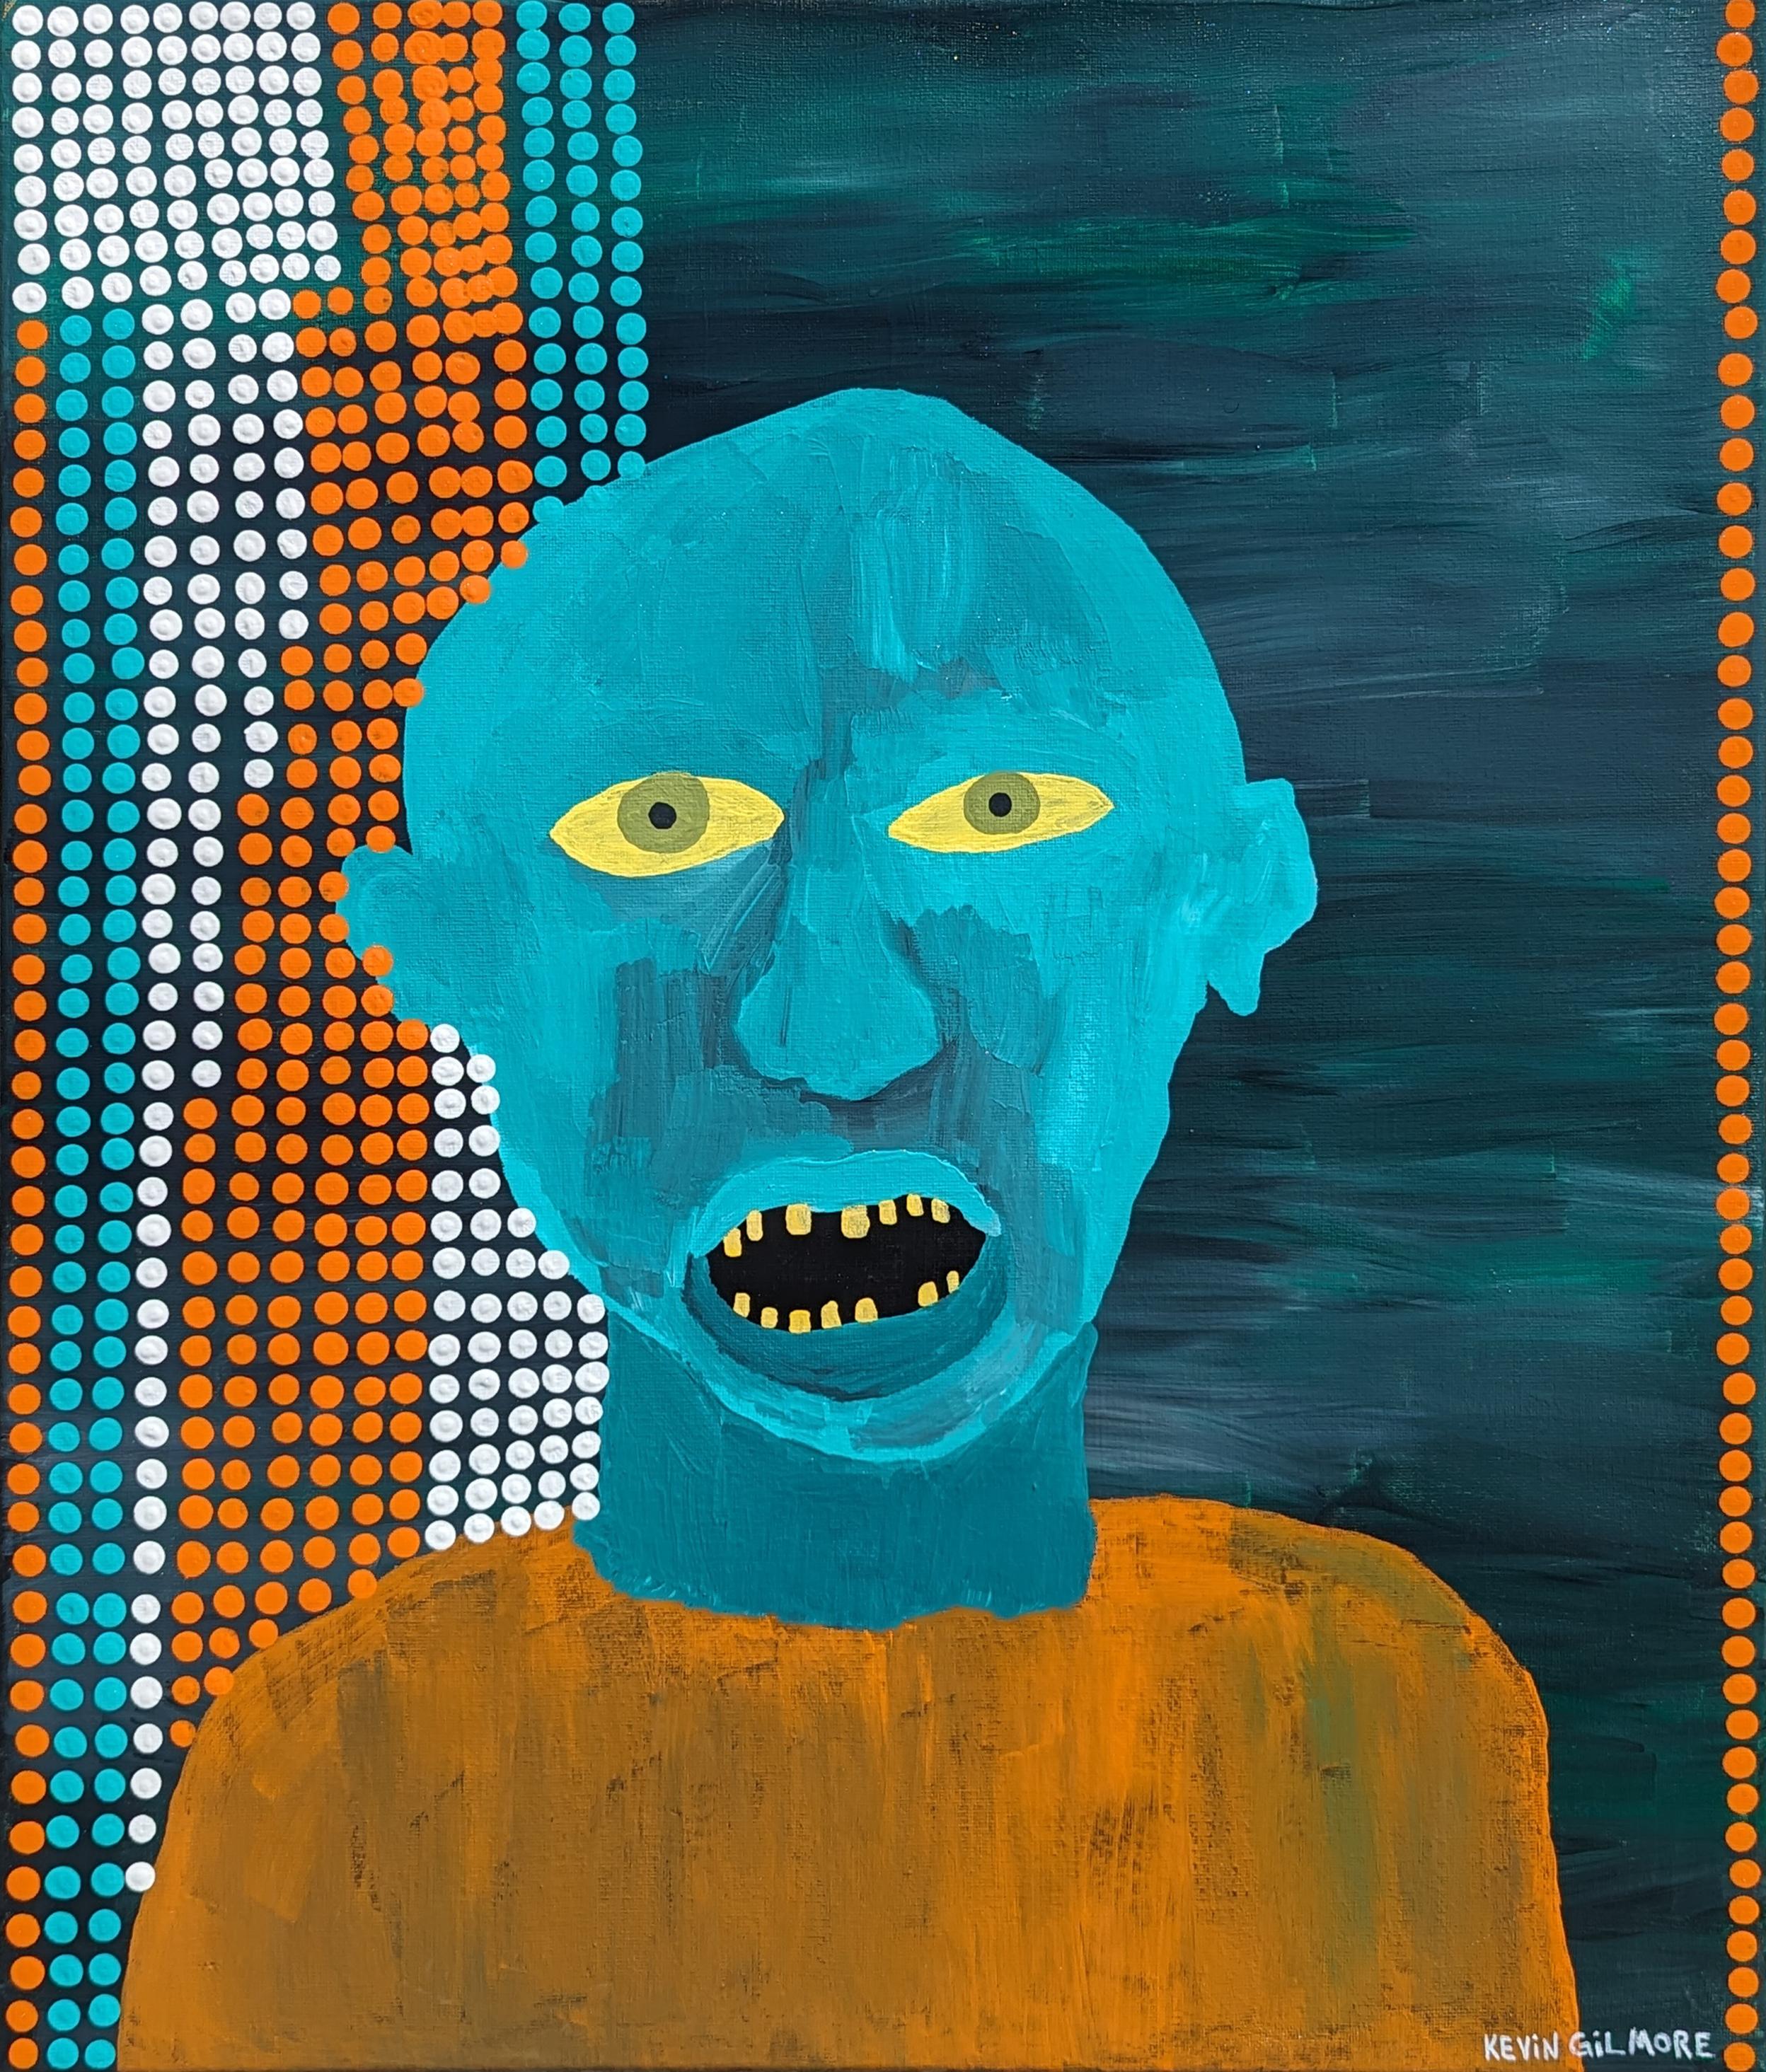 Portrait Painting Kevin Gilmore - "Papunya" Peinture contemporaine de portrait figuratif à l'extérieur dans les tons sarcelle et orange